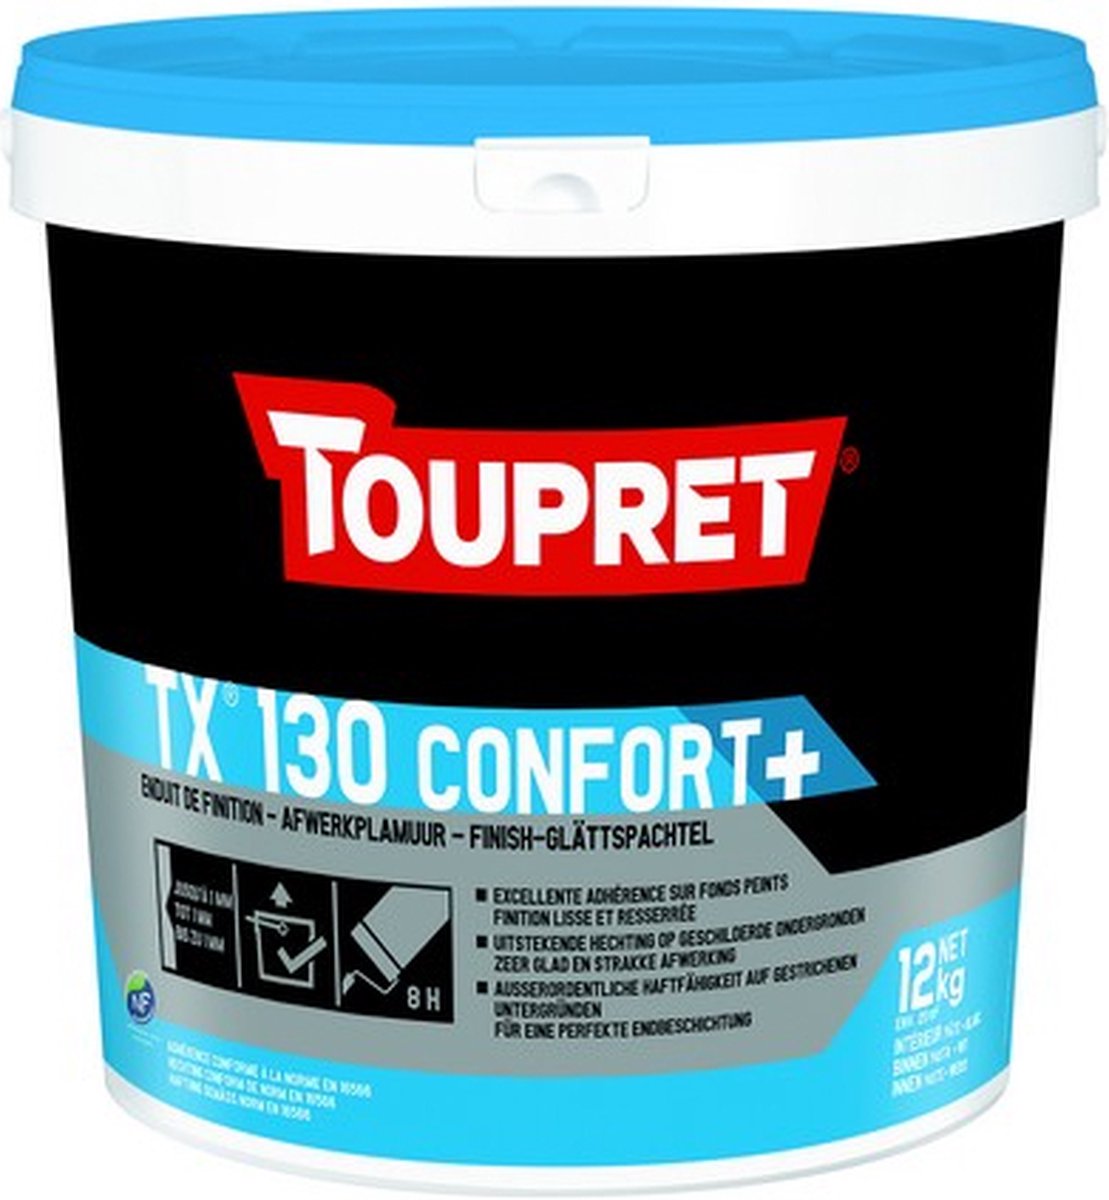 Toupret Tx 130 Confort + - 12KG